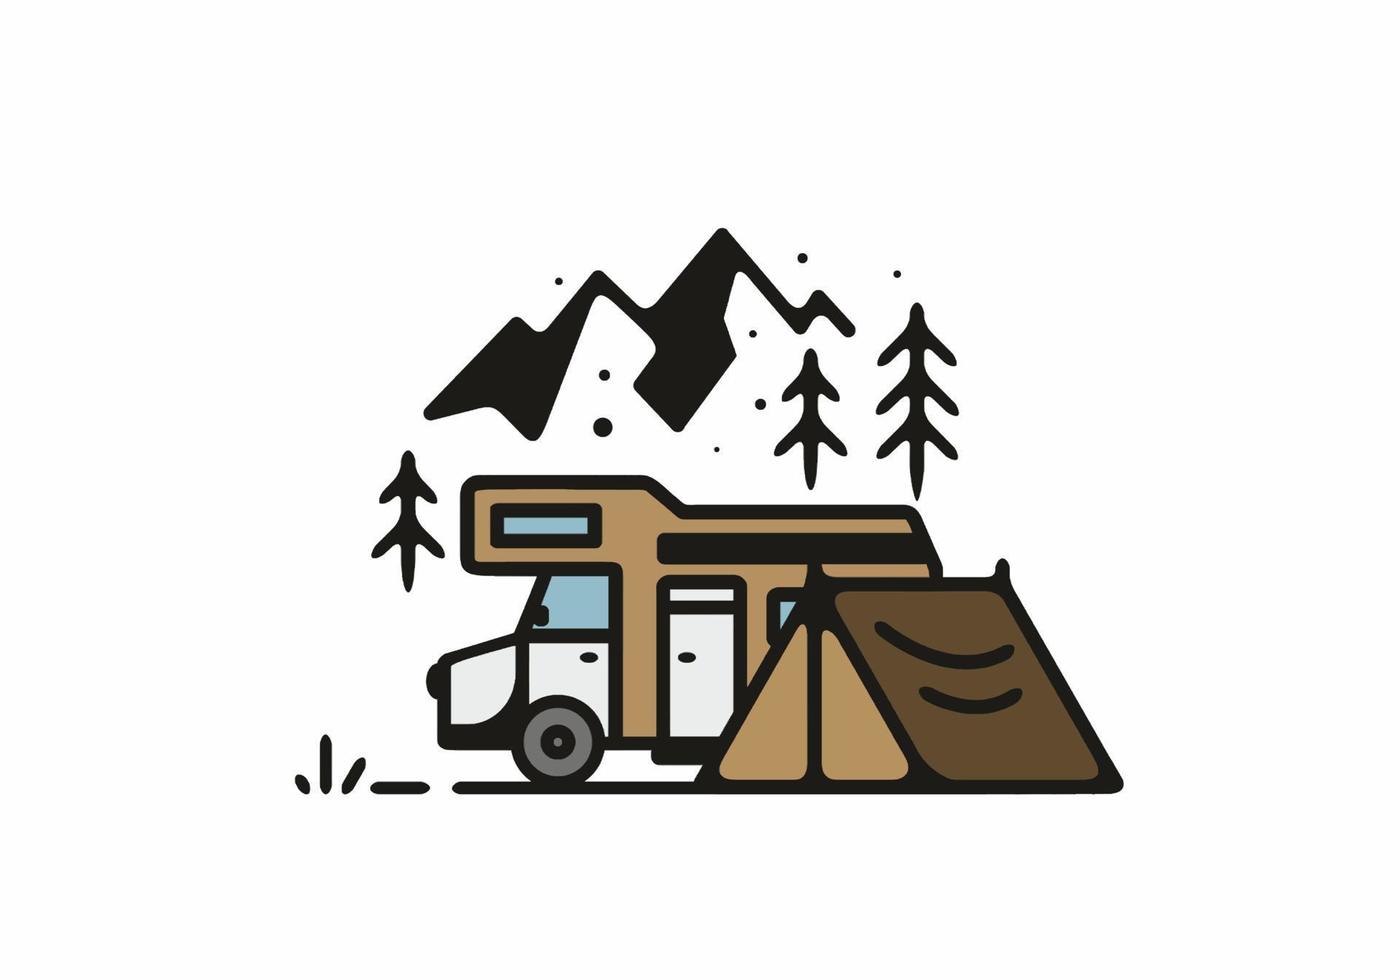 campeggio con illustrazione di arte al tratto di camper vettore